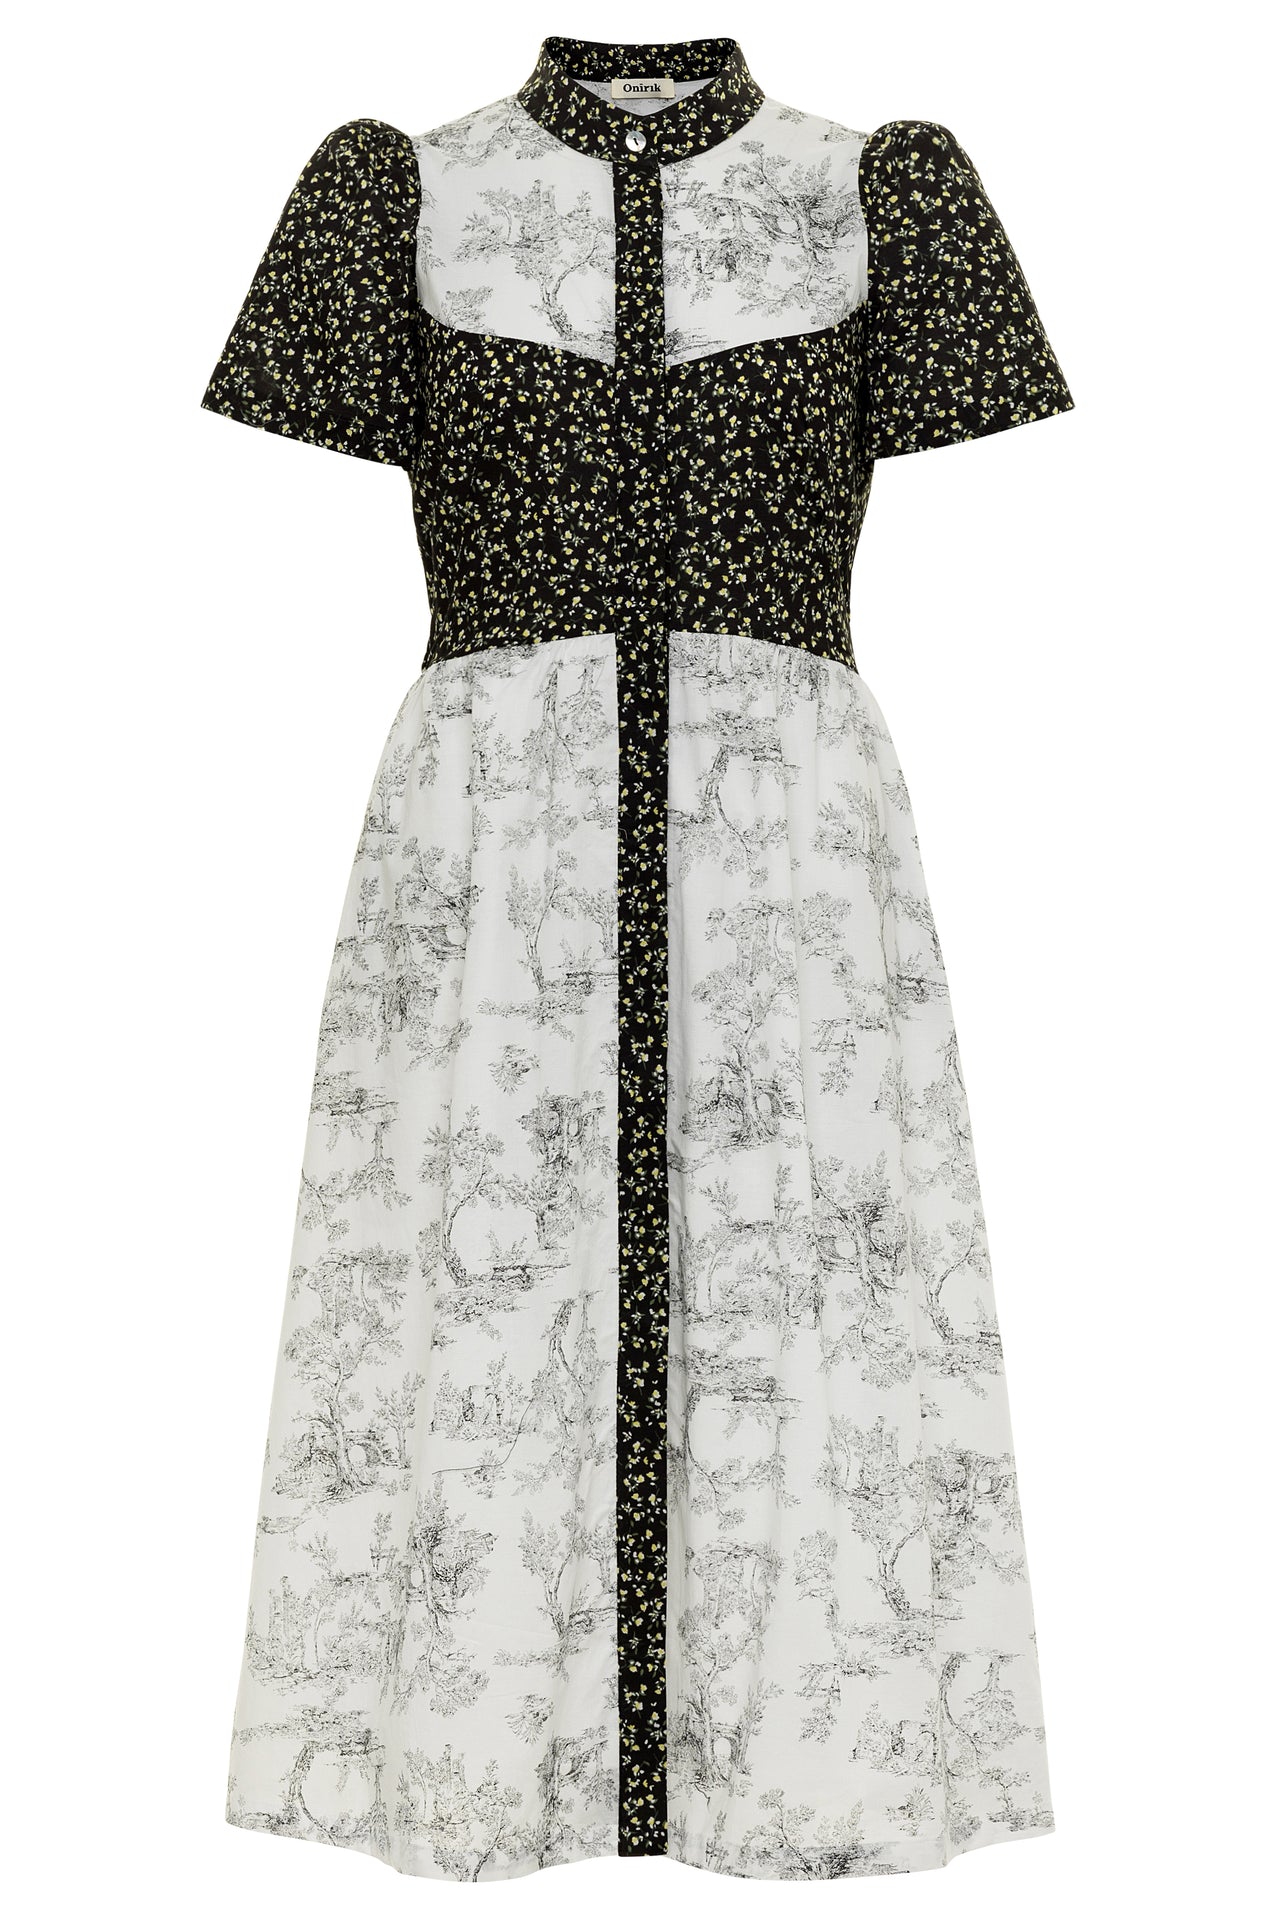 Clover Shirt Dress / Black Mini Floral + Vintage White Toile Print Cotton Voile